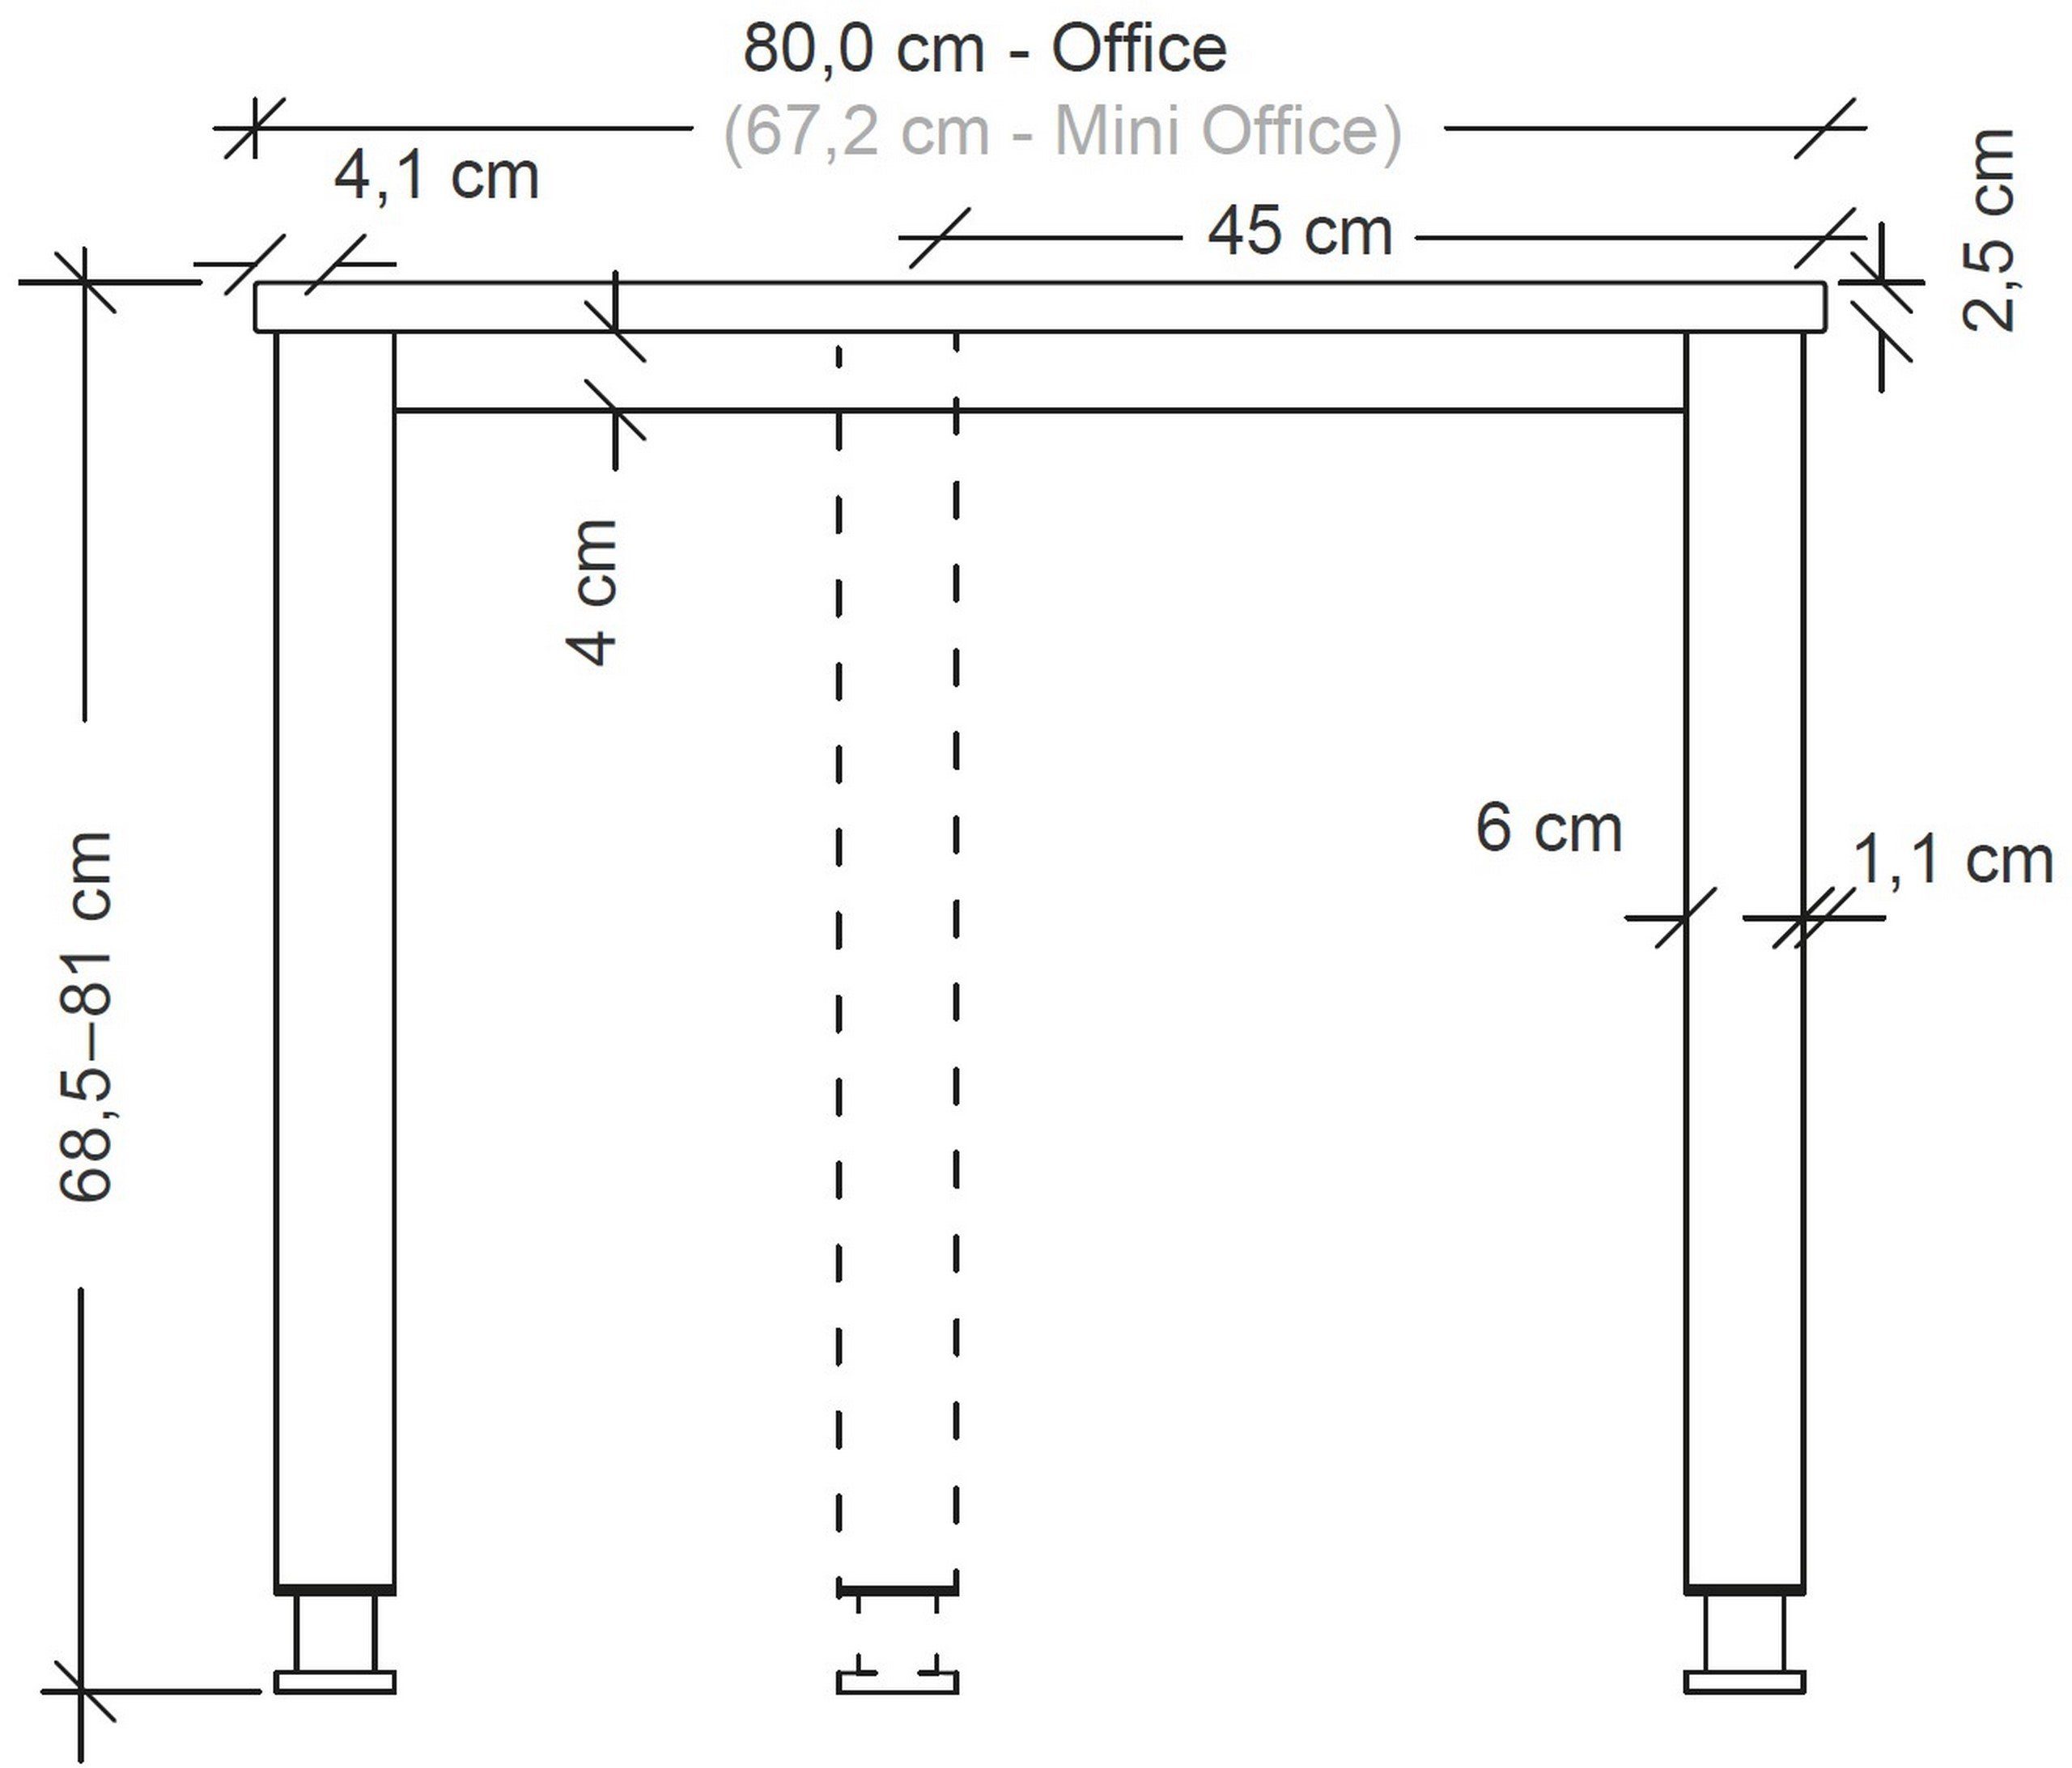 - Schreibtisch Quadrat: Beton Dekor: Schreibtisch cm Serie-H, 80 bümö x 80